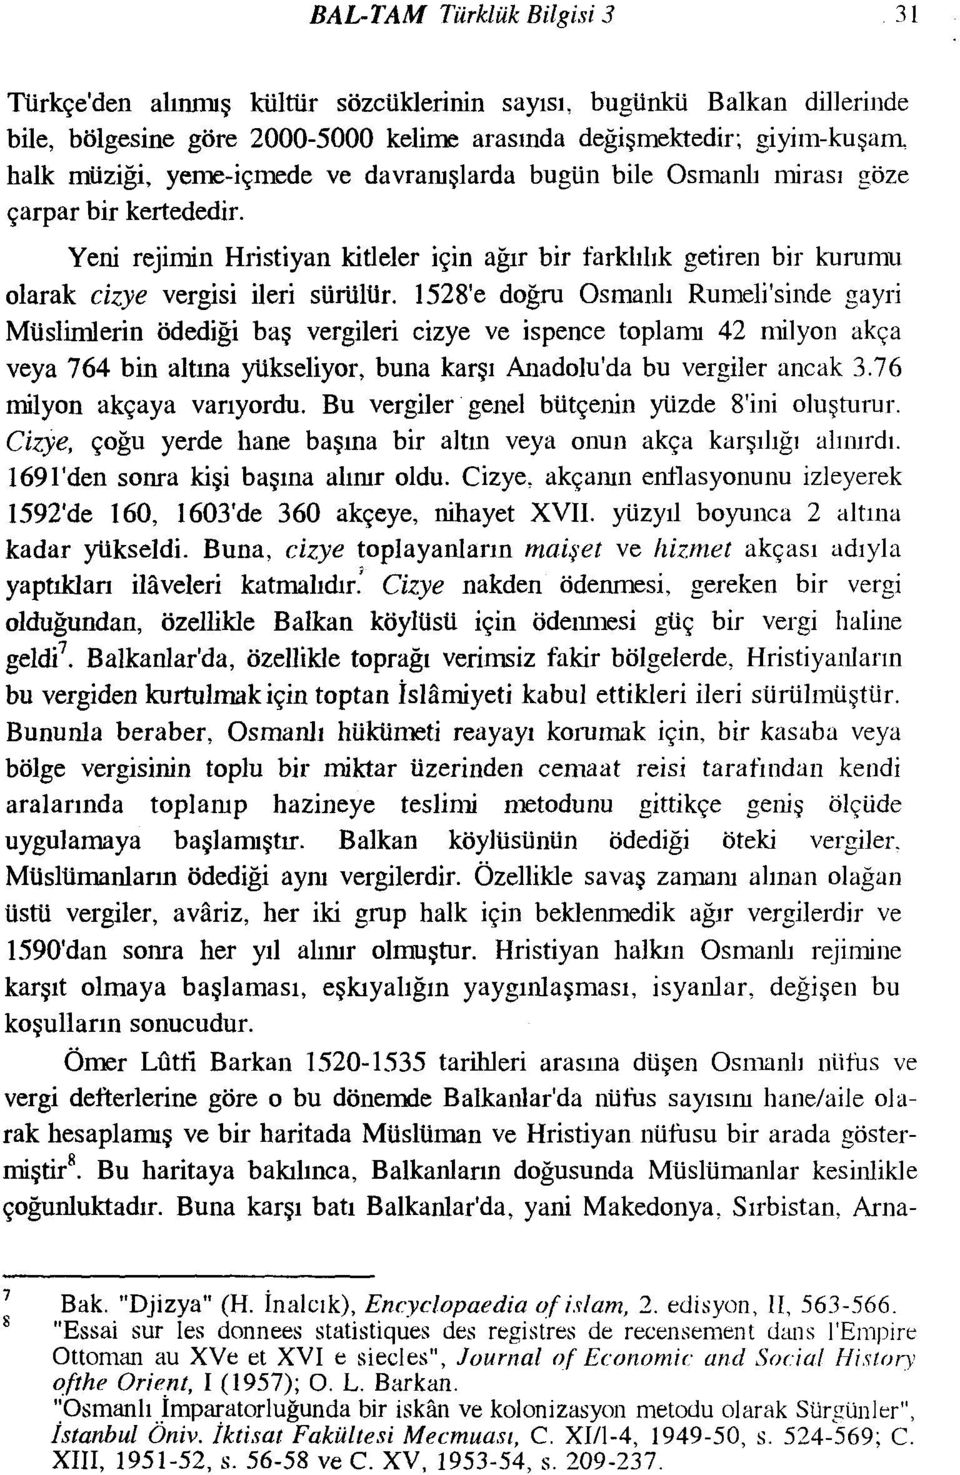 1528'e doğru Osmanlı Rumeli'sinde gayri Müslimlerin ödediği baş vergileri cizye ve ispence toplamı 42 milyon akça veya 764 bin altına yükseliyor, buna karşı Anadolu'da bu vergiler ancak 3.